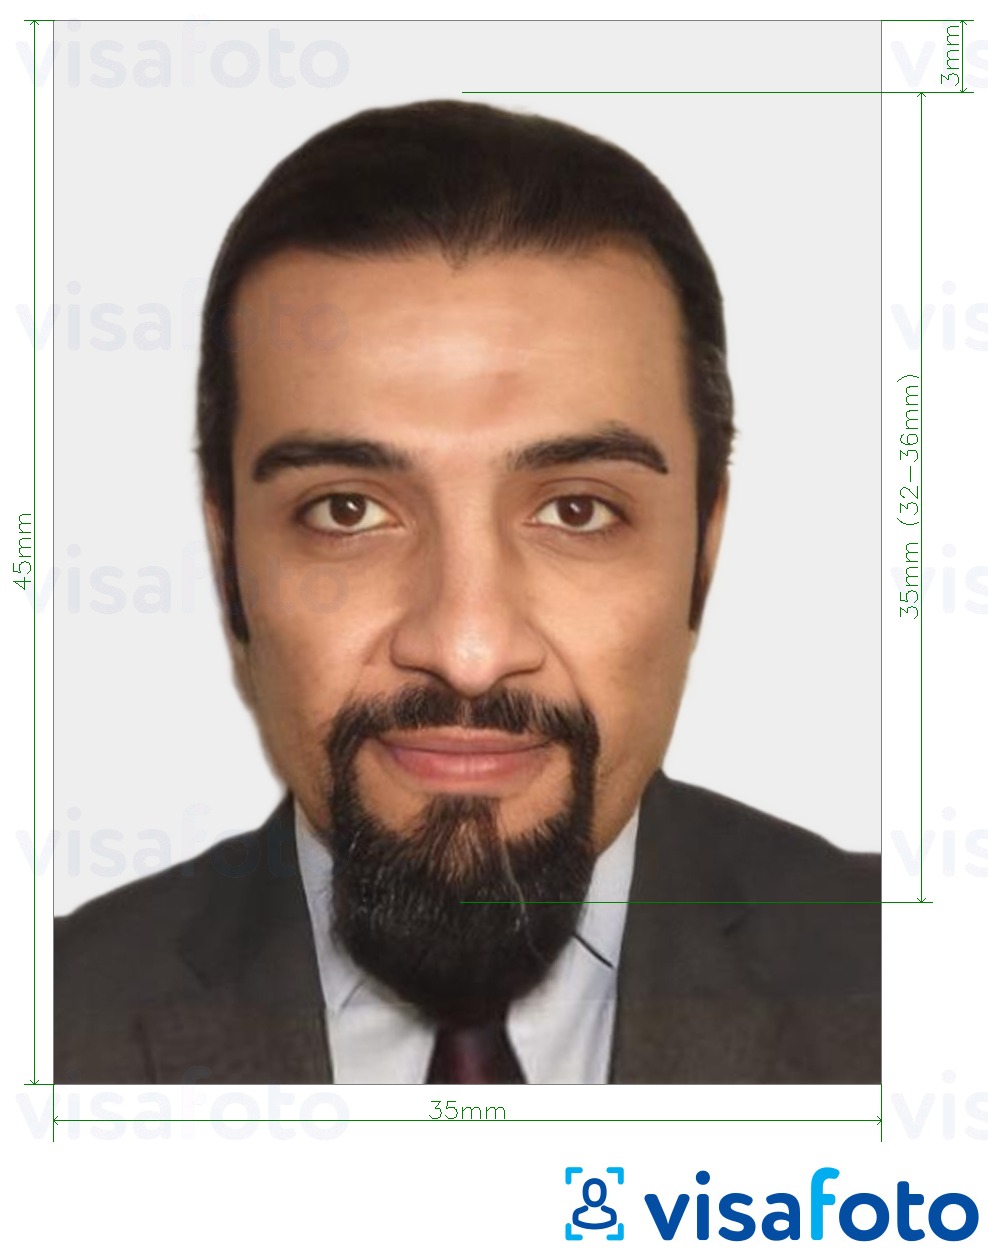 Exemples sur des photos pour Visa Maroc 35x45 mm (3,5x4,5 cm) avec les spécifications de taille exactes